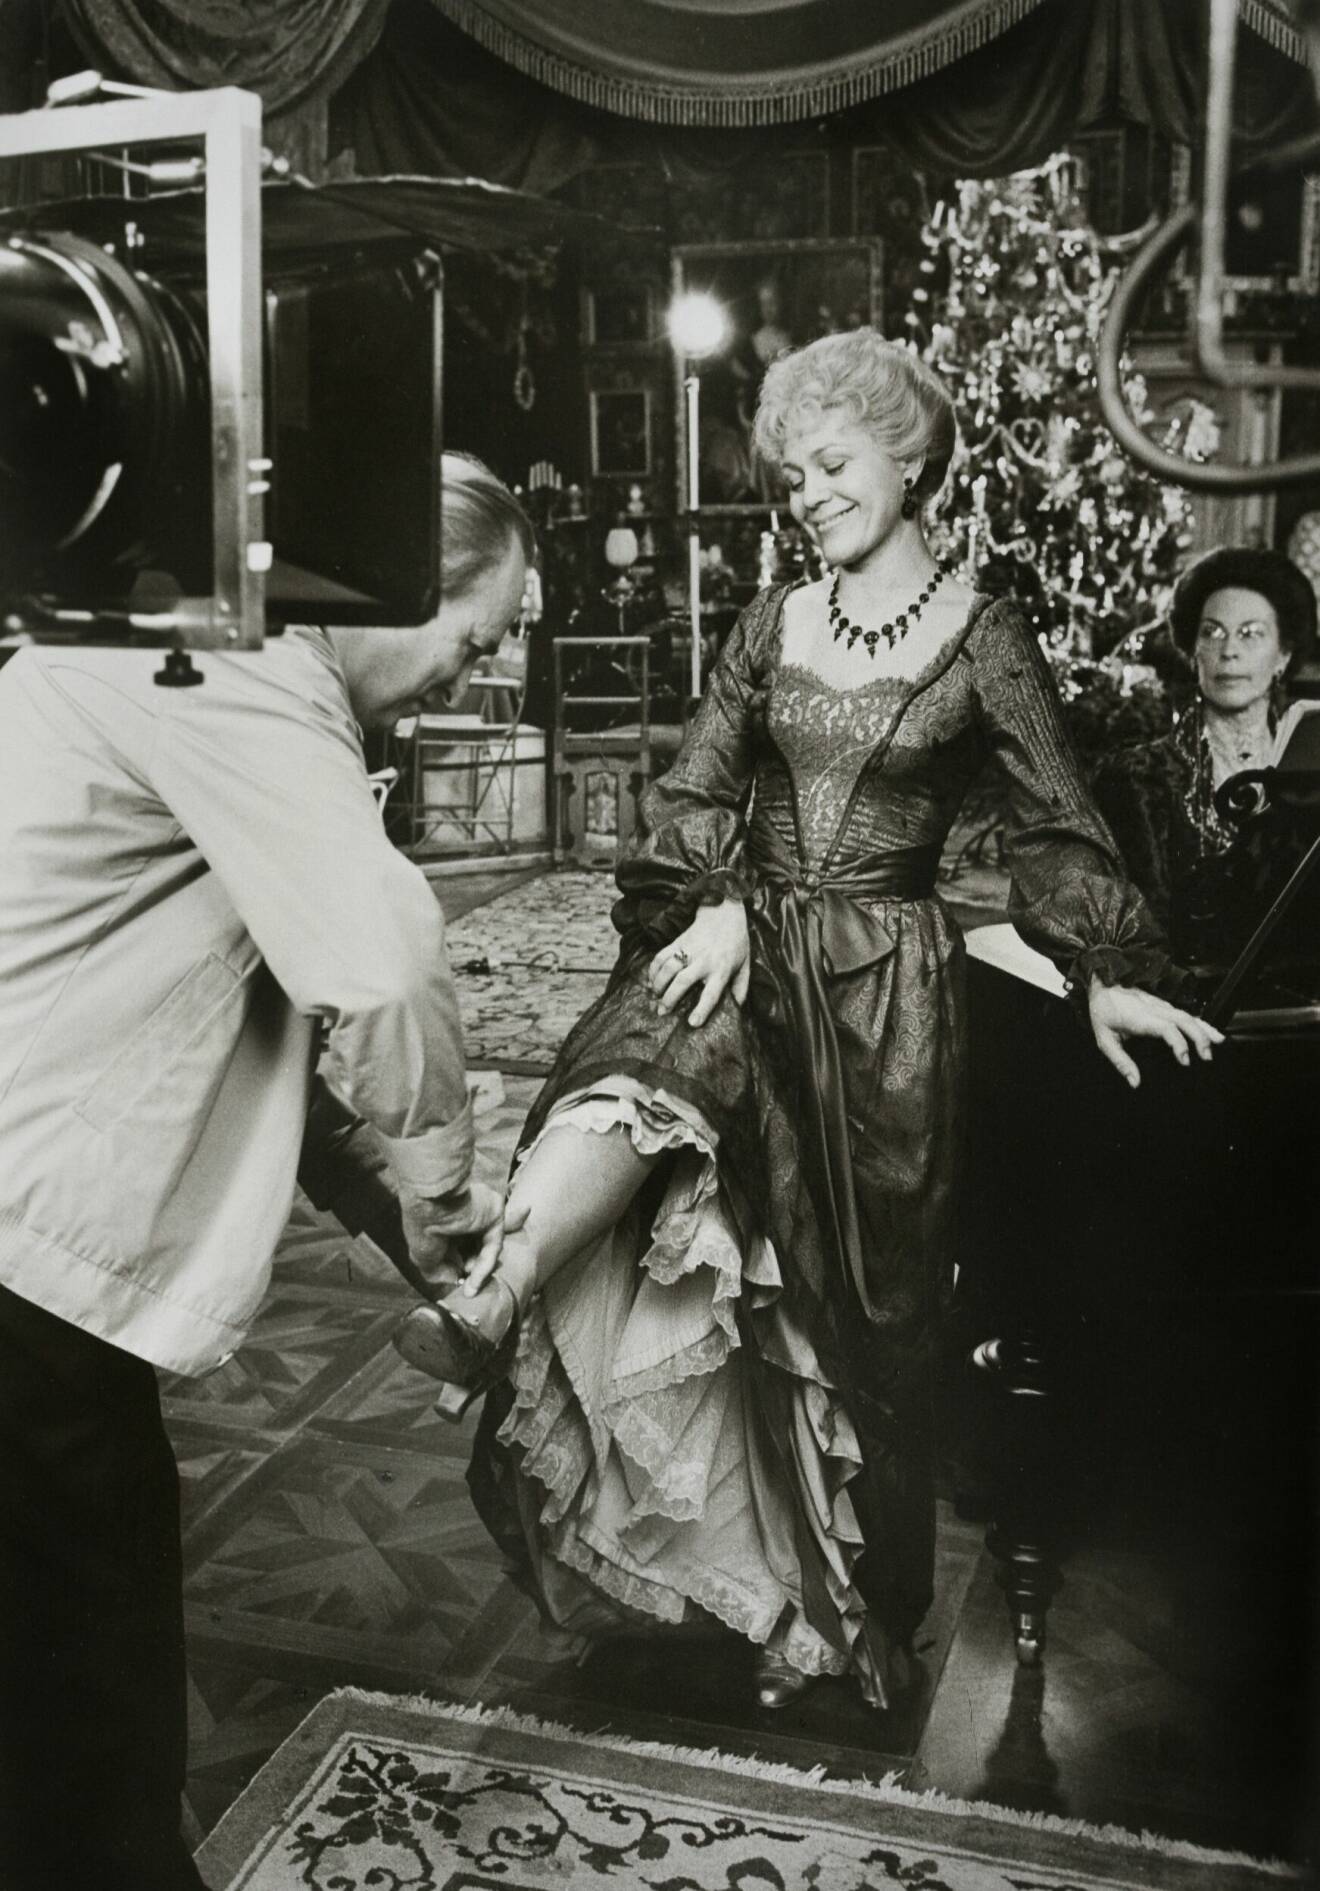 Inspelning av filmen "Fanny och Alexander" år 1981 i regi av Ingmar Bergman (vänster). Till höger Christina Schollin.